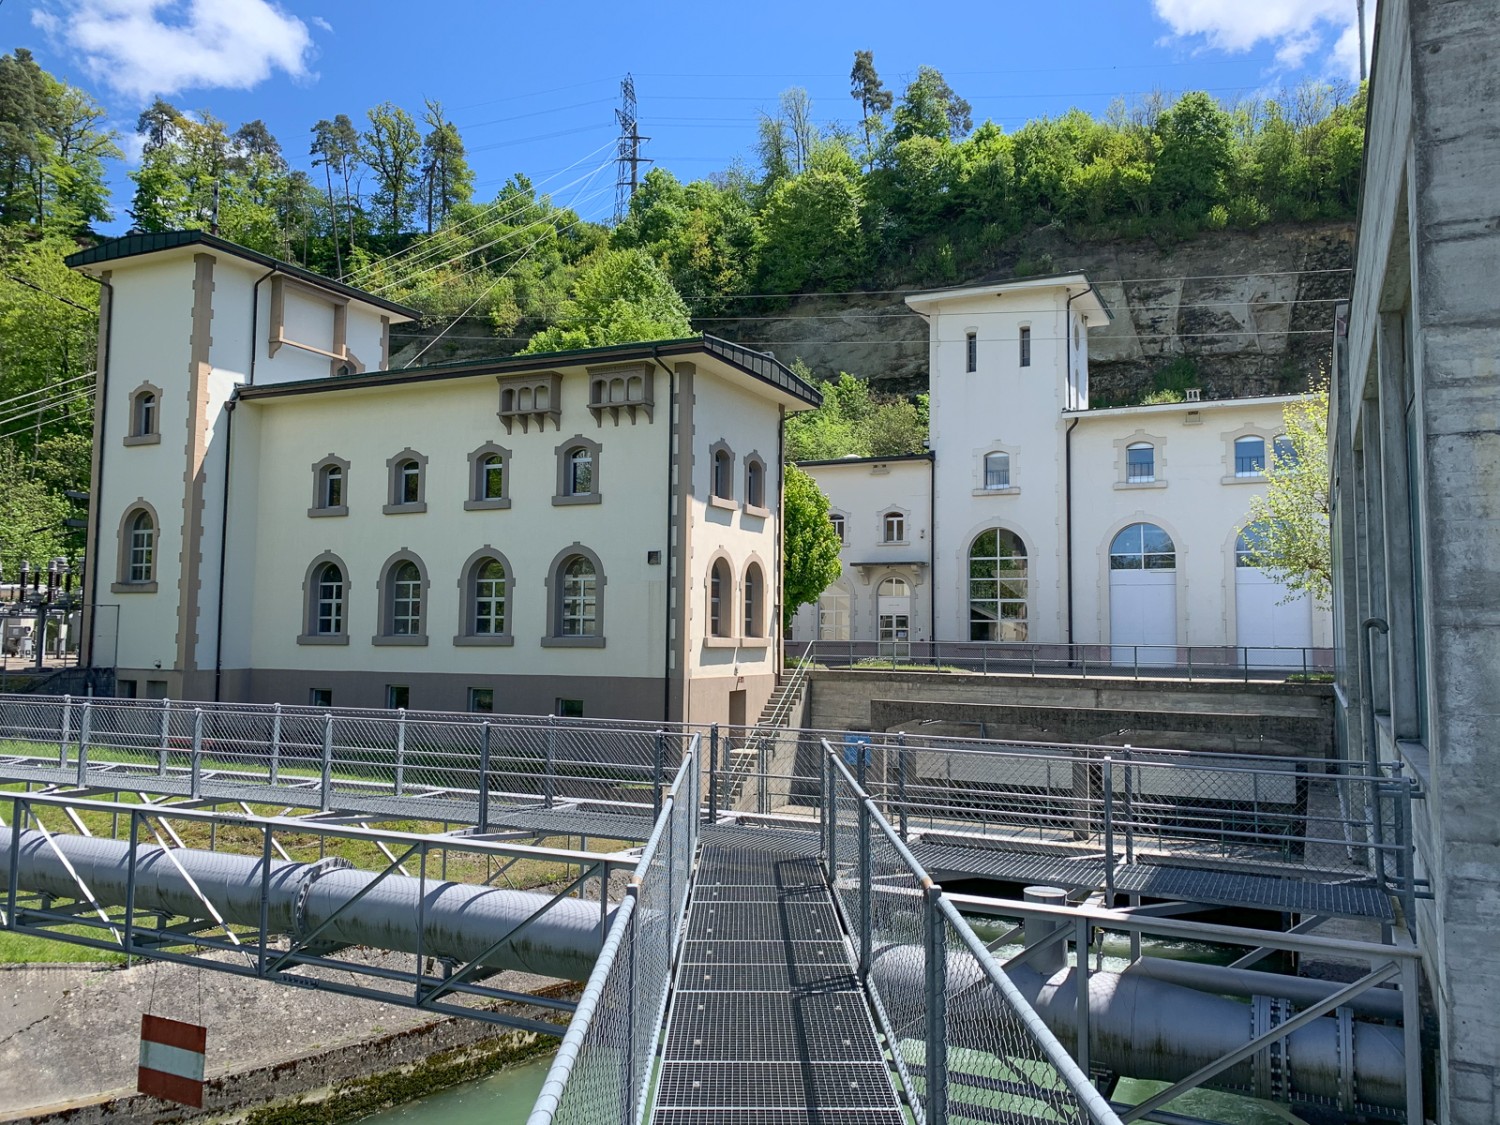 Der Weg führt am Kraftwerk Hauterive vorbei, das sich mit seiner beschaulichen Lage neben Fluss und Wald durchaus sehen lässt. Bild: Monika Leuenberger